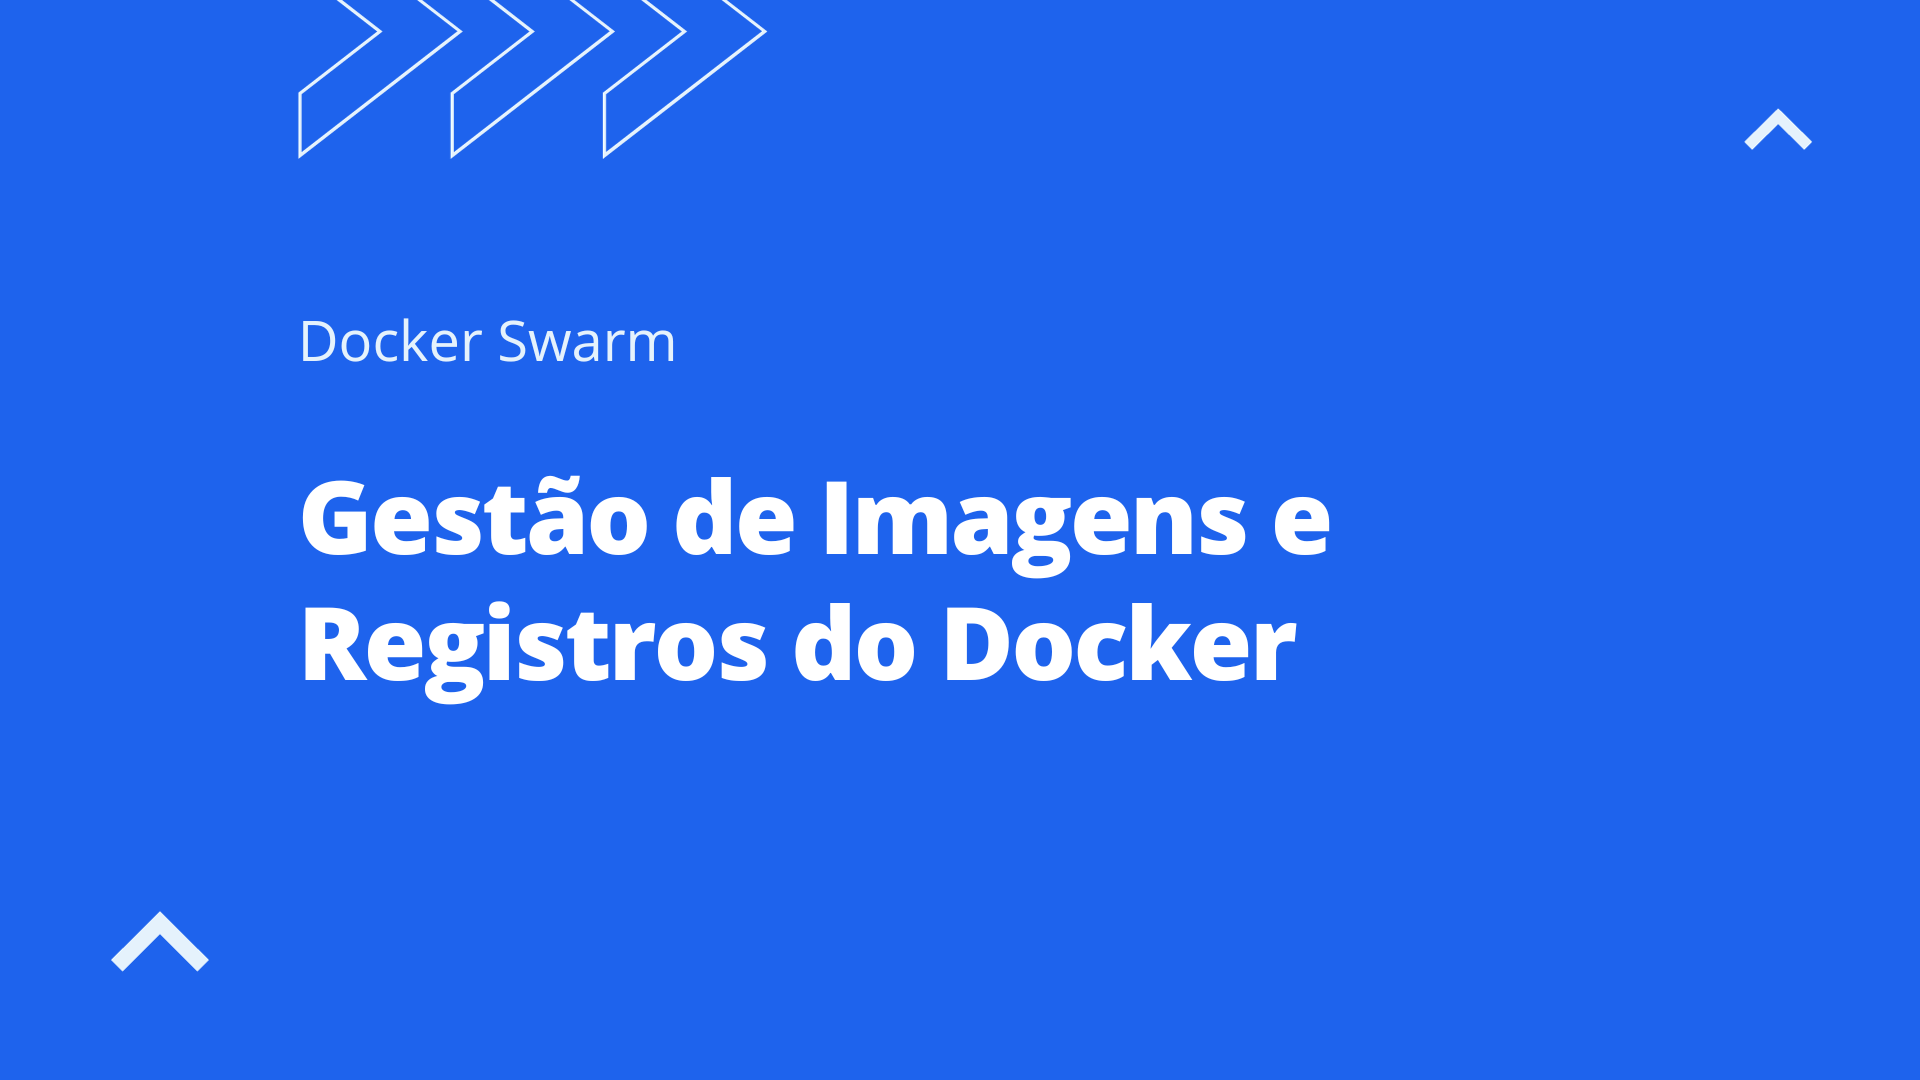 Gestão de Imagens e Registros do Docker